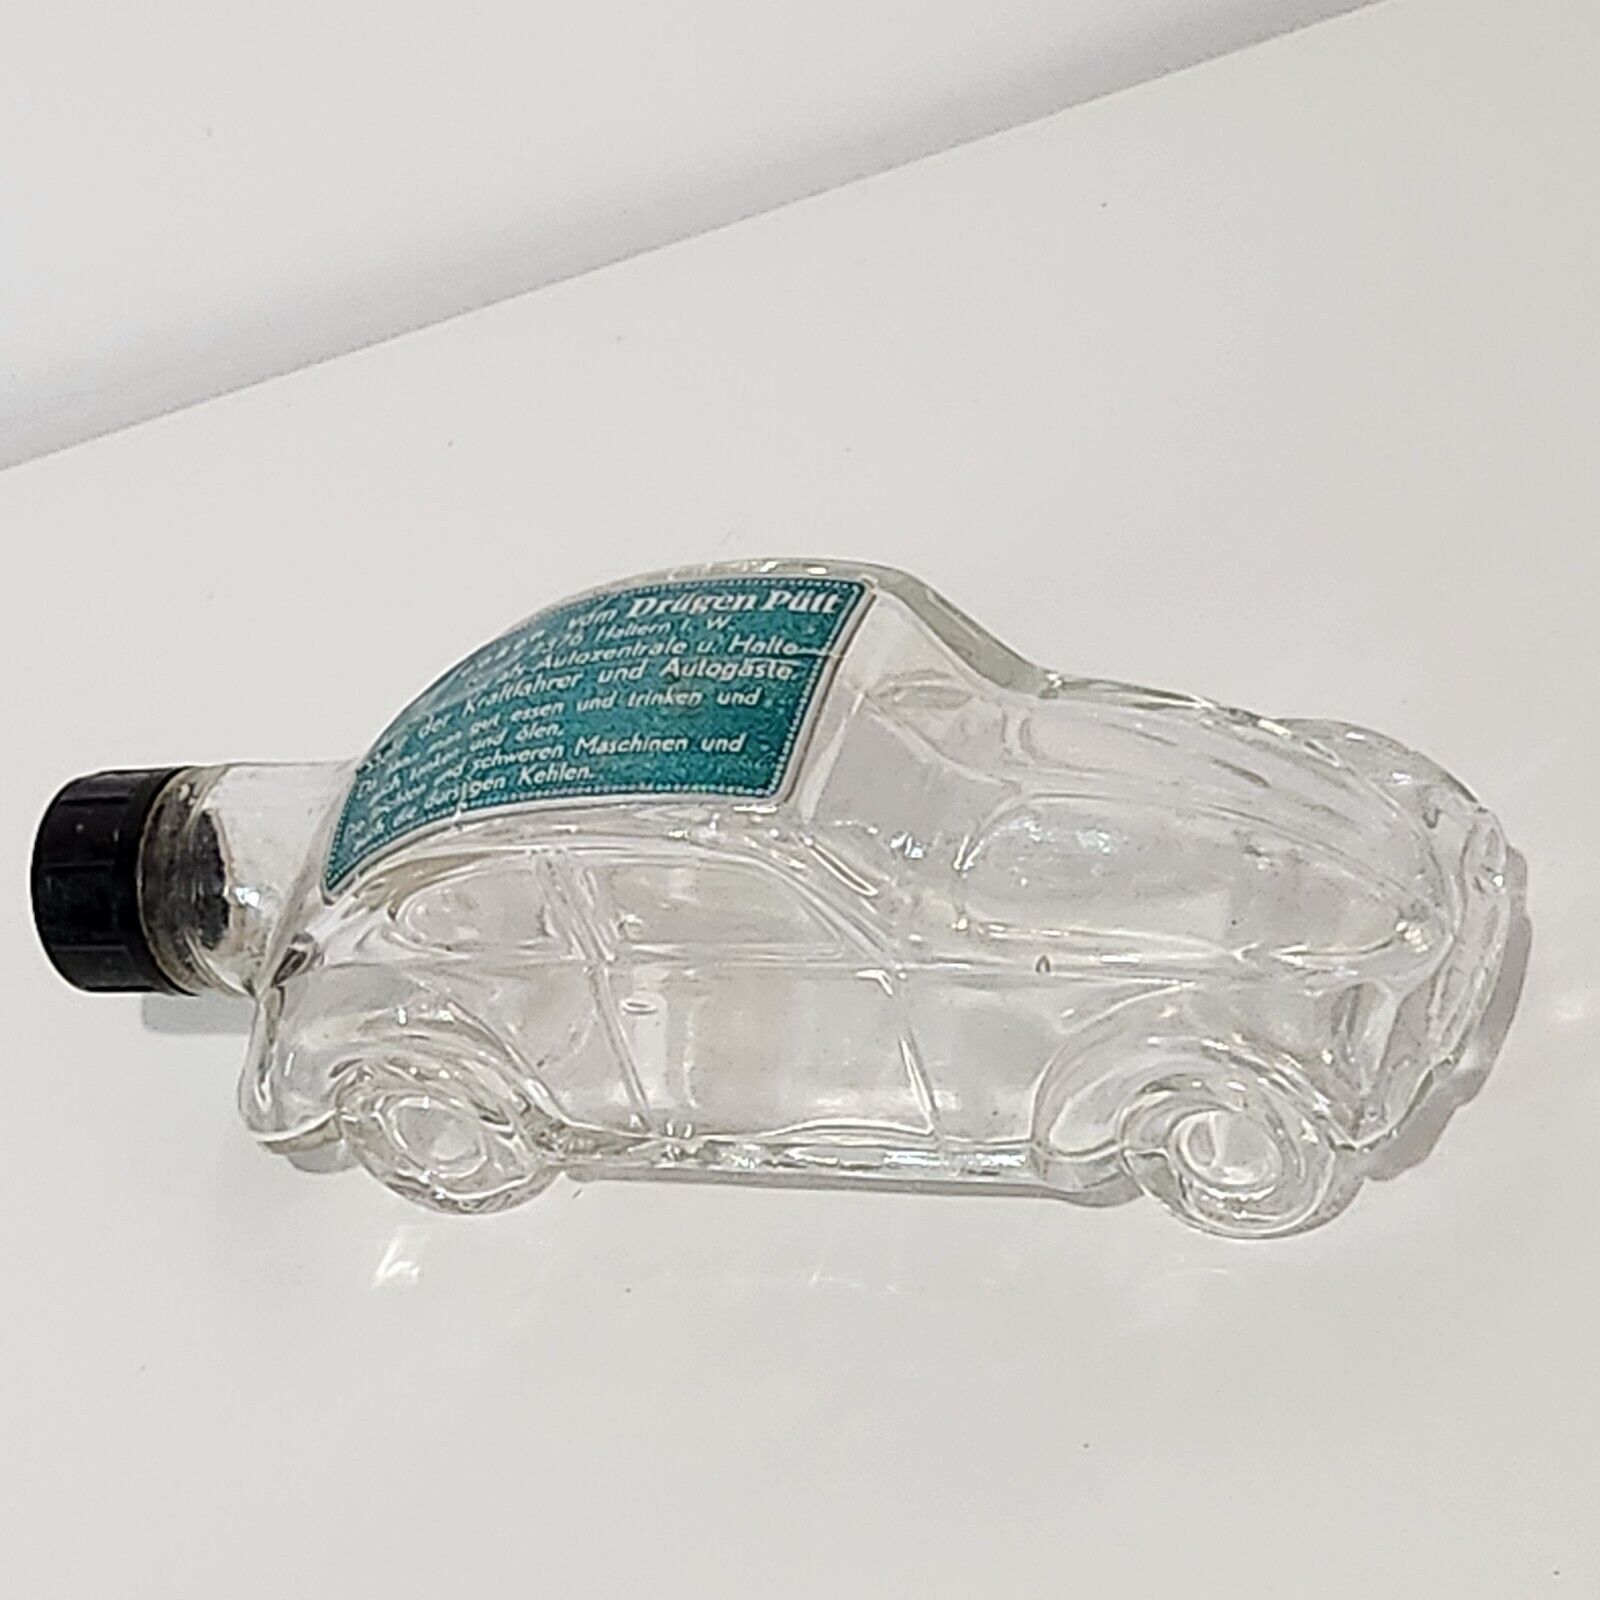 RARE Volkswagen VW Bug Beetle Glass Liquor Bottle Drügen Pütt KDF Brezelkafer